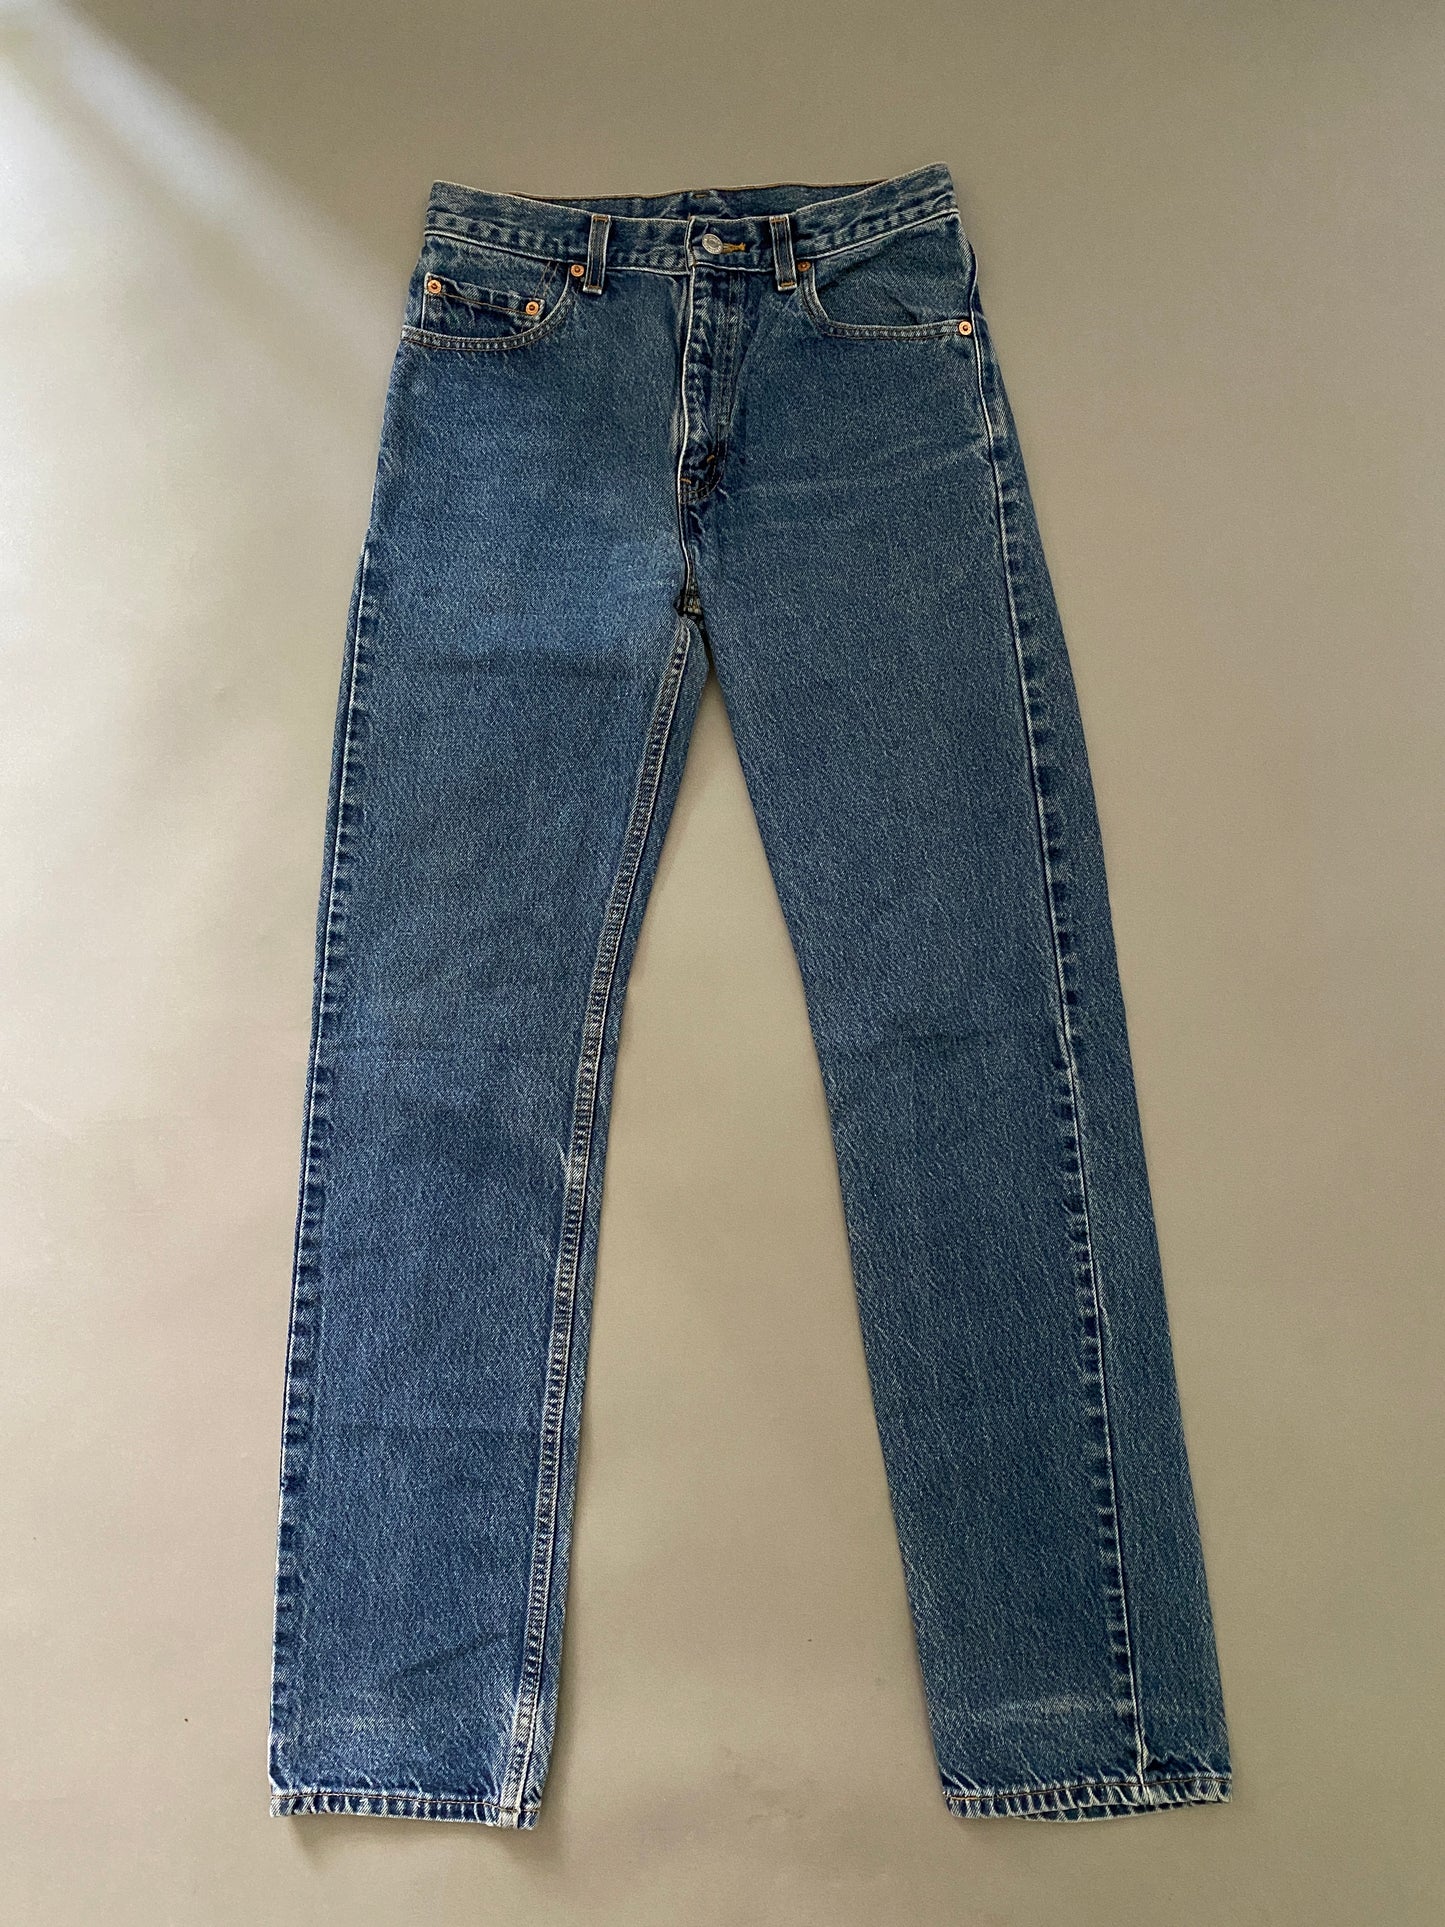 Levis 554 Vintage Jeans